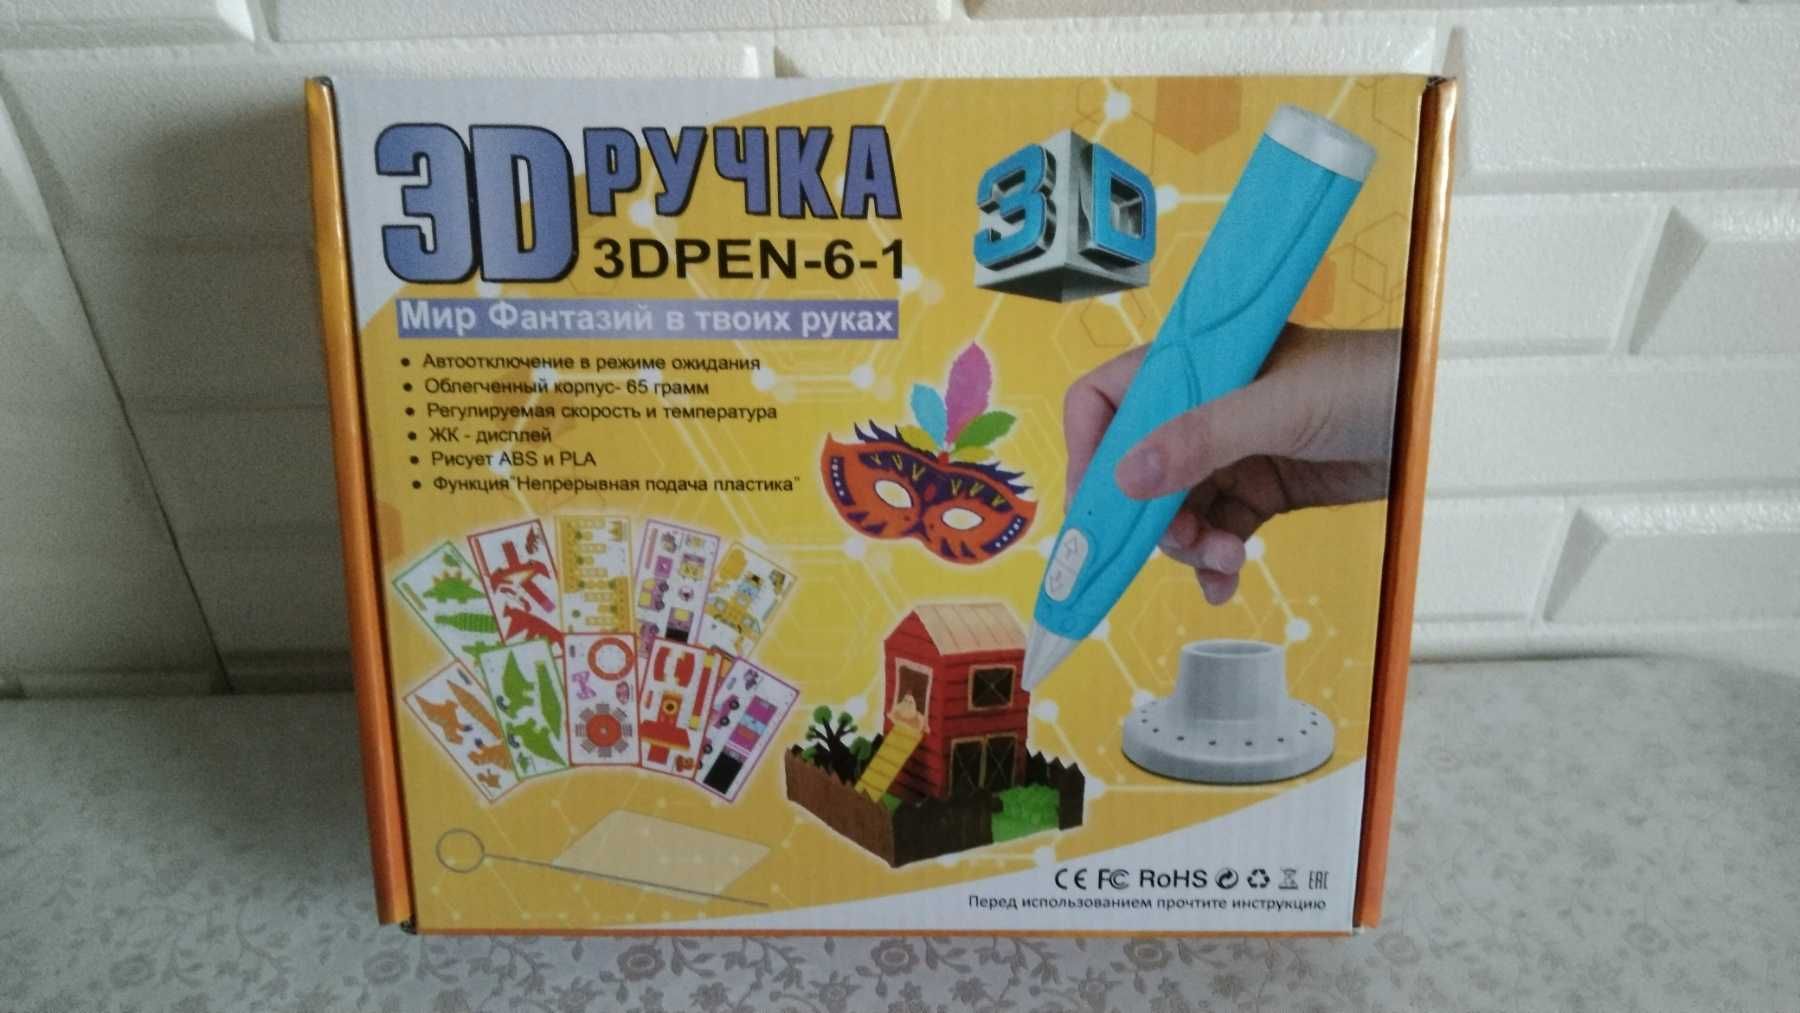 Детская 3D ручка 3Д PEN-6-1 ручка для рисования +ТРАФАРЕТЫ объемных